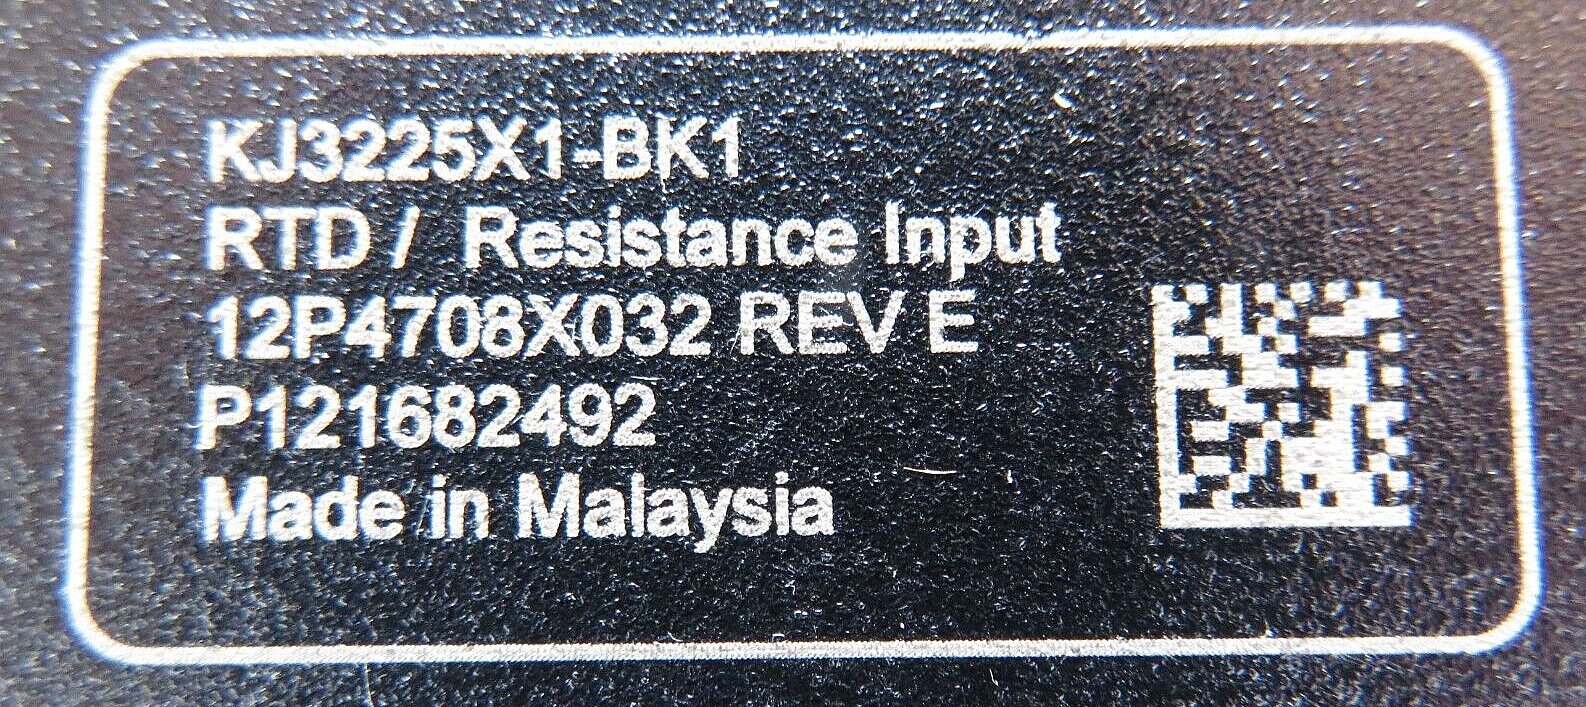 Emerson DeltaV KJ3225X1-BK1 S-Series Analog RTD / Resistance Input Module